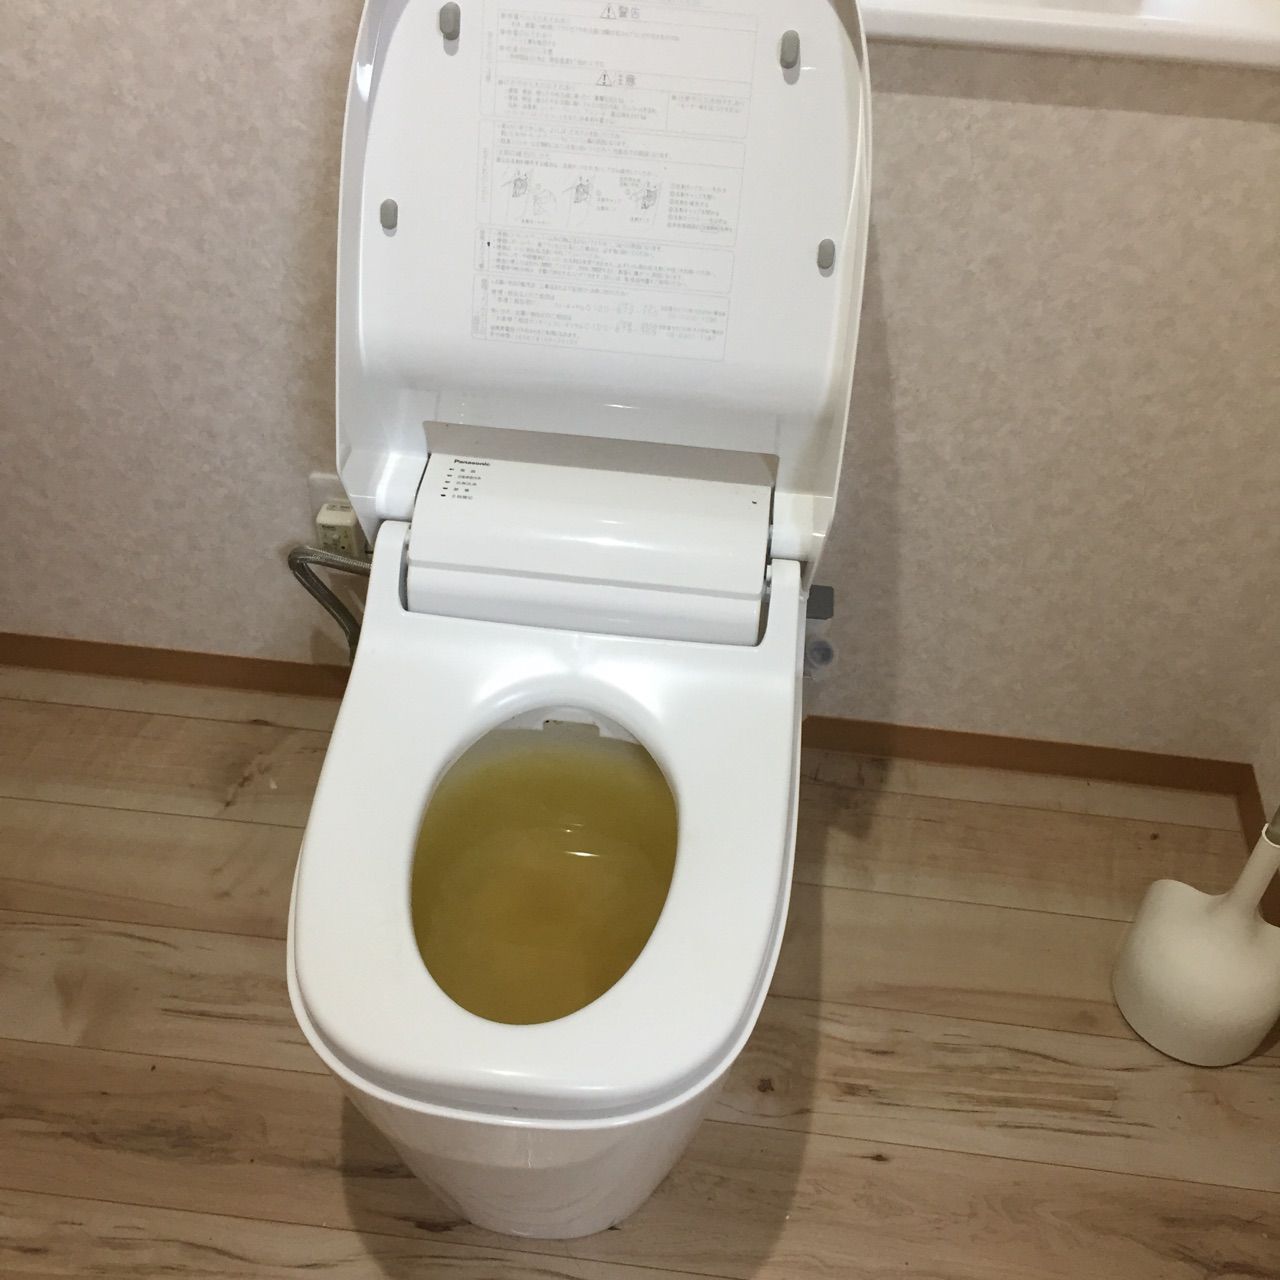 水もれドルフィンの安心だいじょうブログ トイレ詰まり 修理 パナソニックアラウーノ 京都